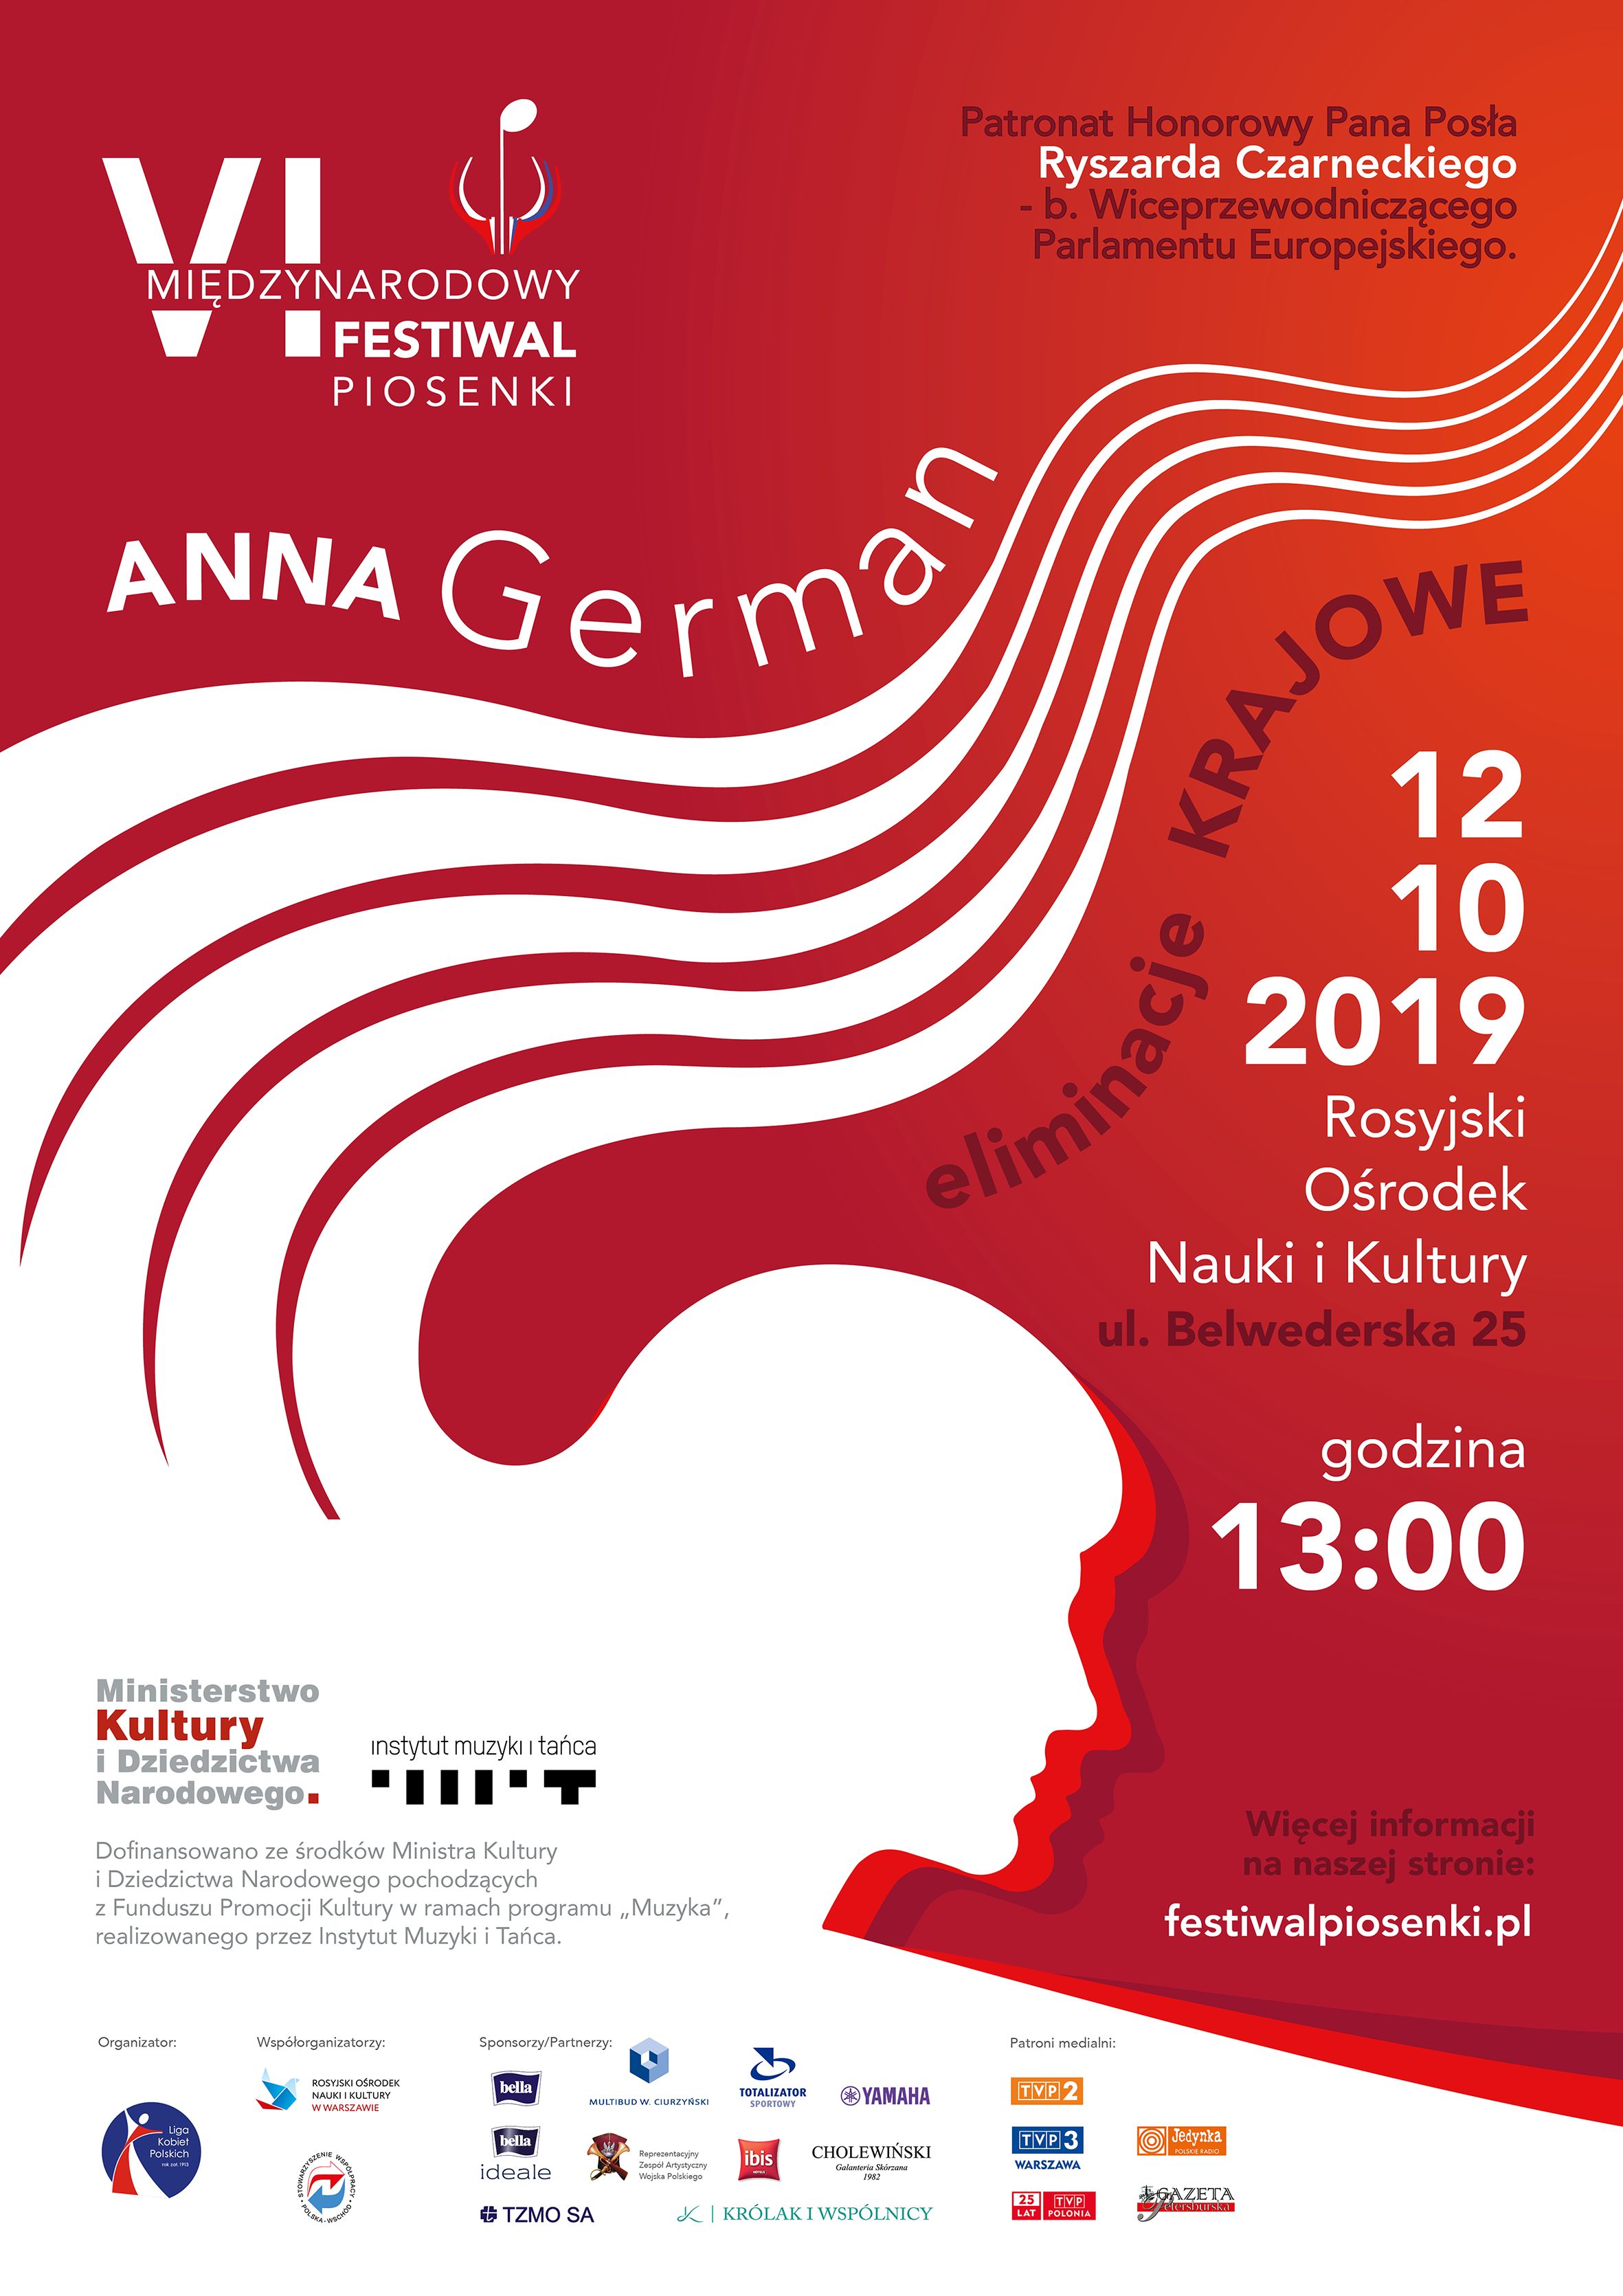 12 октября на площадке РЦНК в Варшаве состоится национальный отбор на фестиваль Анны Герман